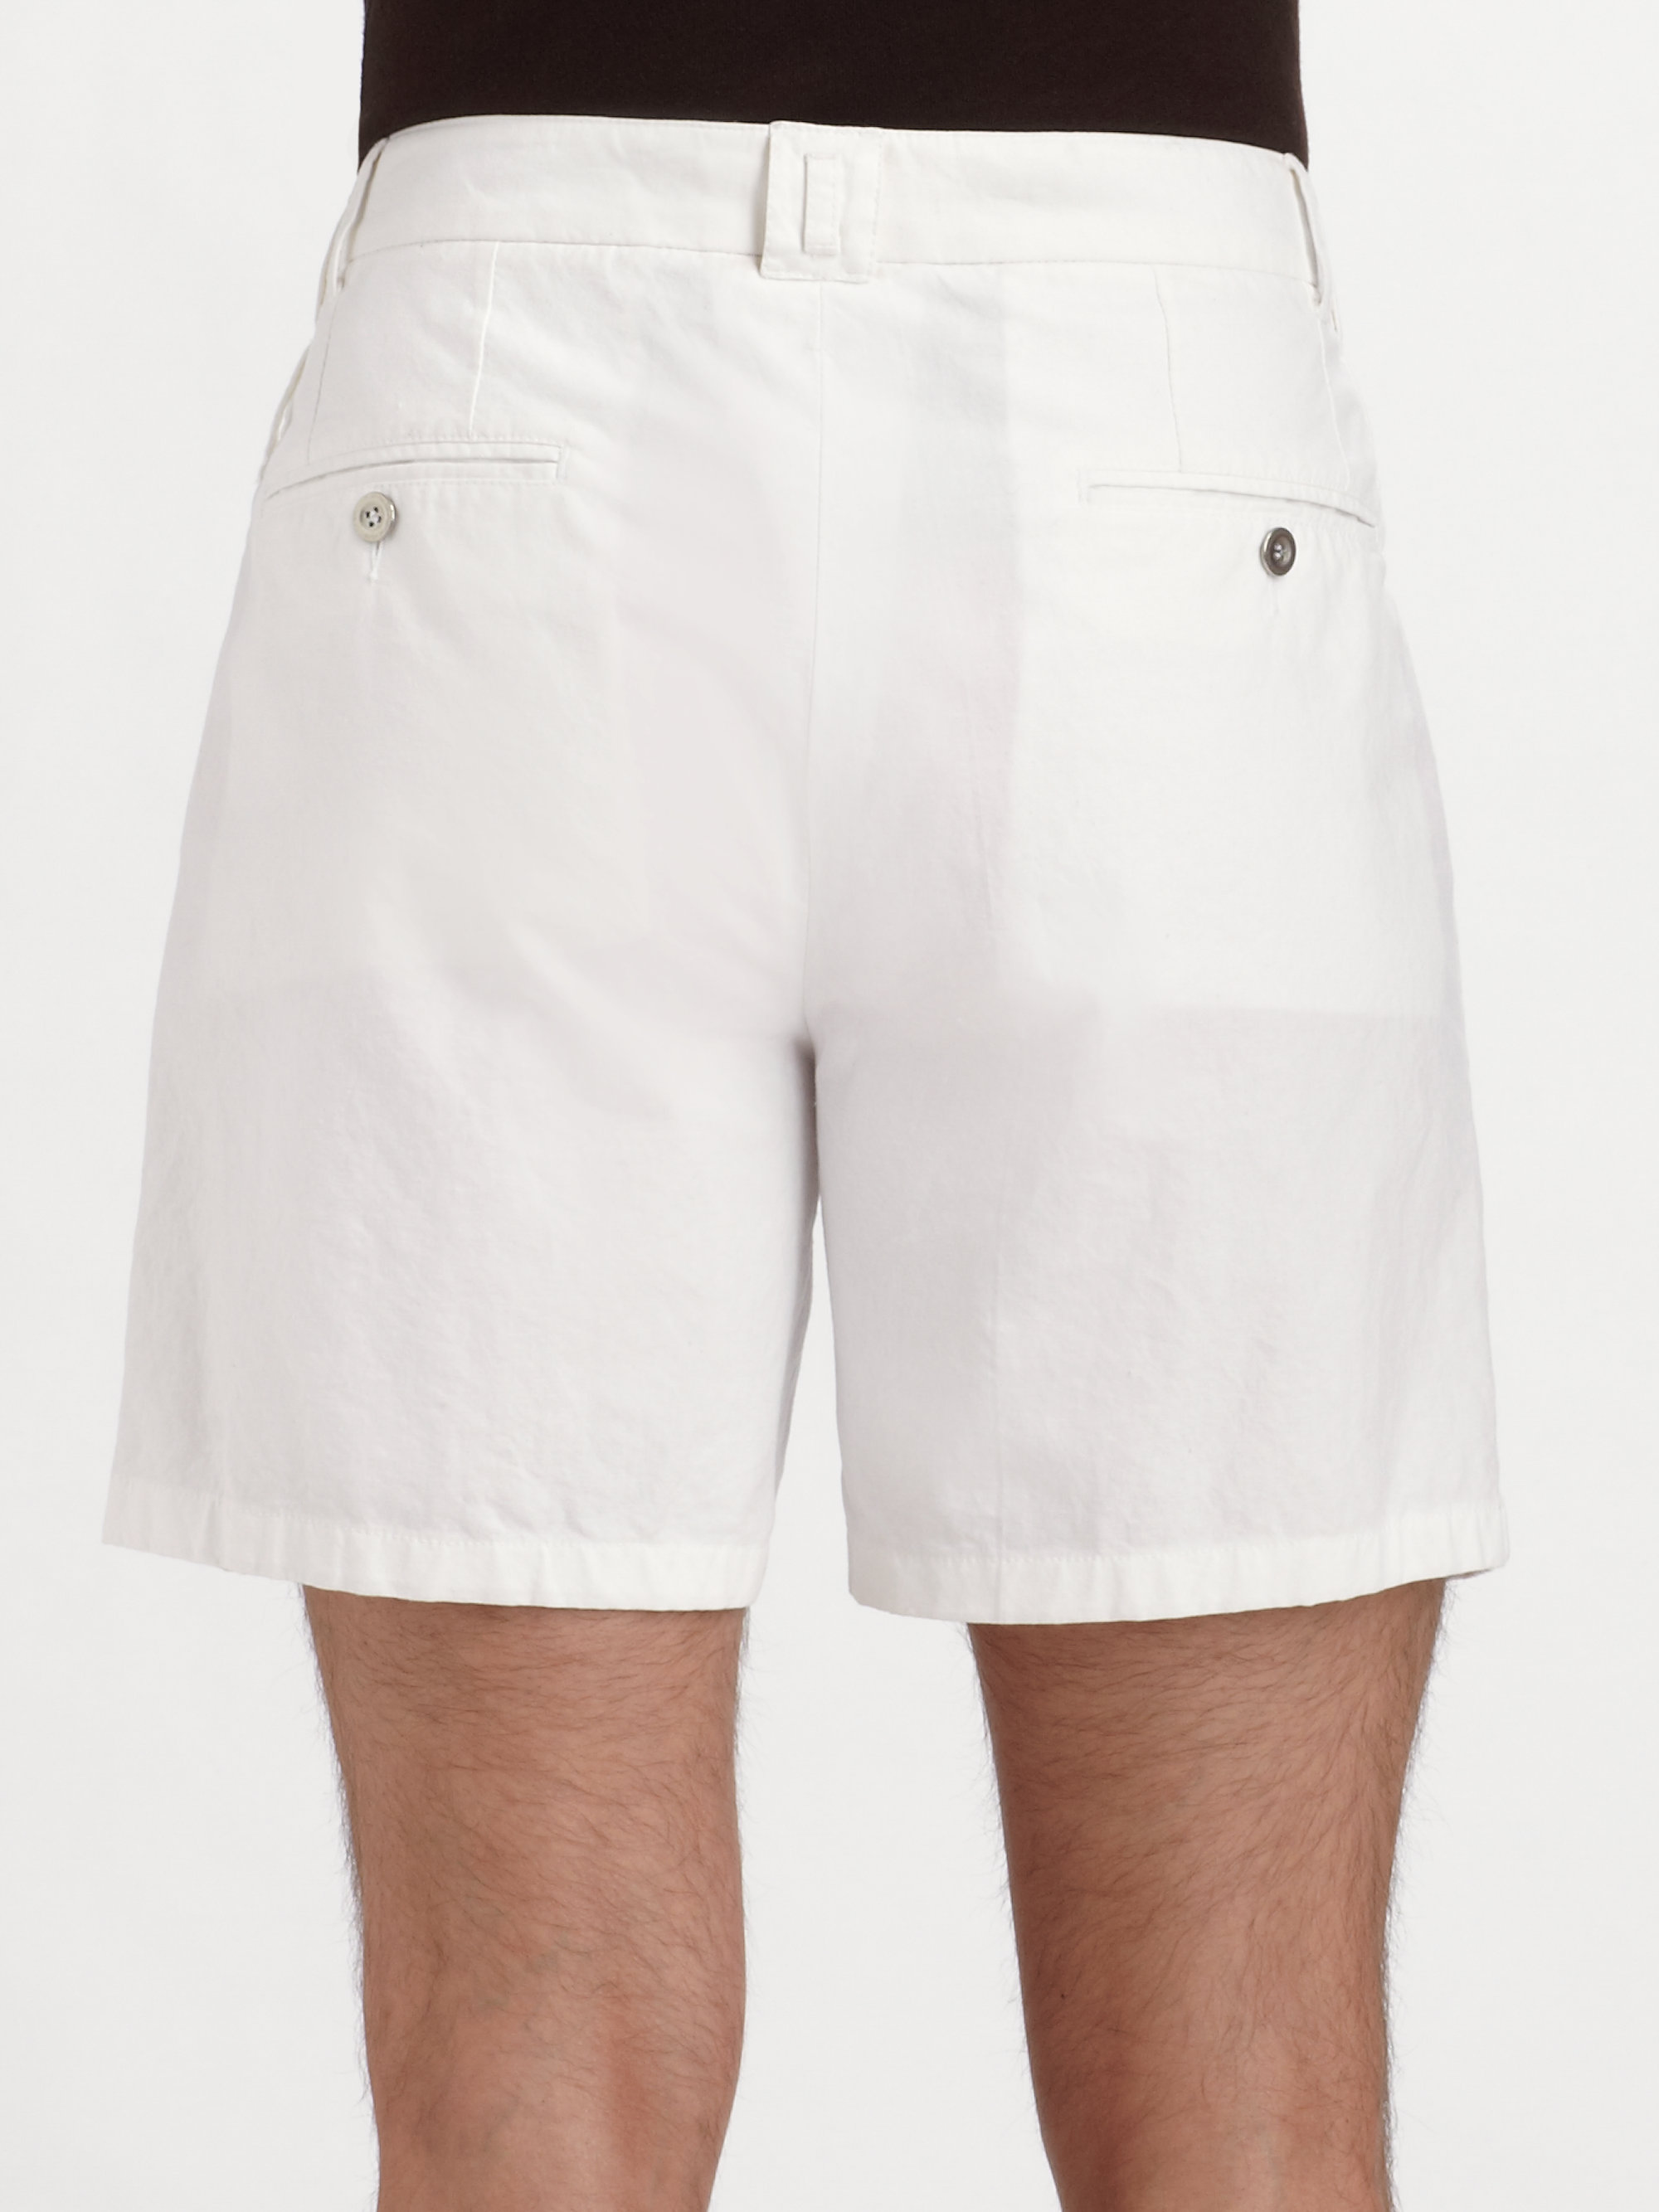 Lyst - Dolce & gabbana Linen Shorts in White for Men